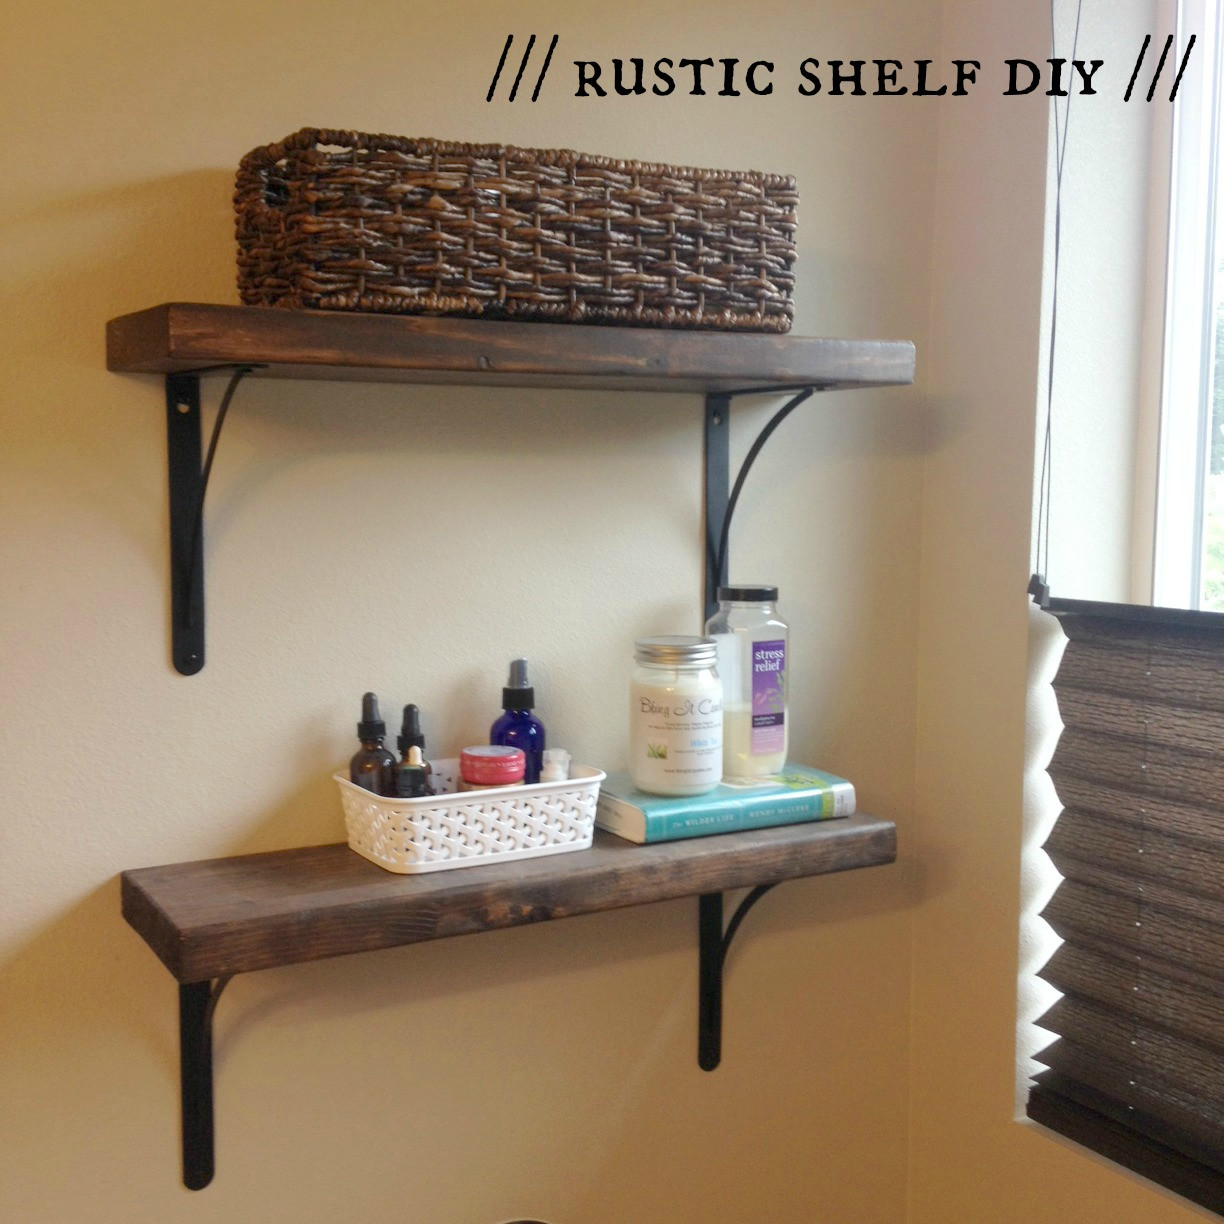 Rustic Wood Shelves DIY
 That Dad Dominic’s Rustic Shelf DIY